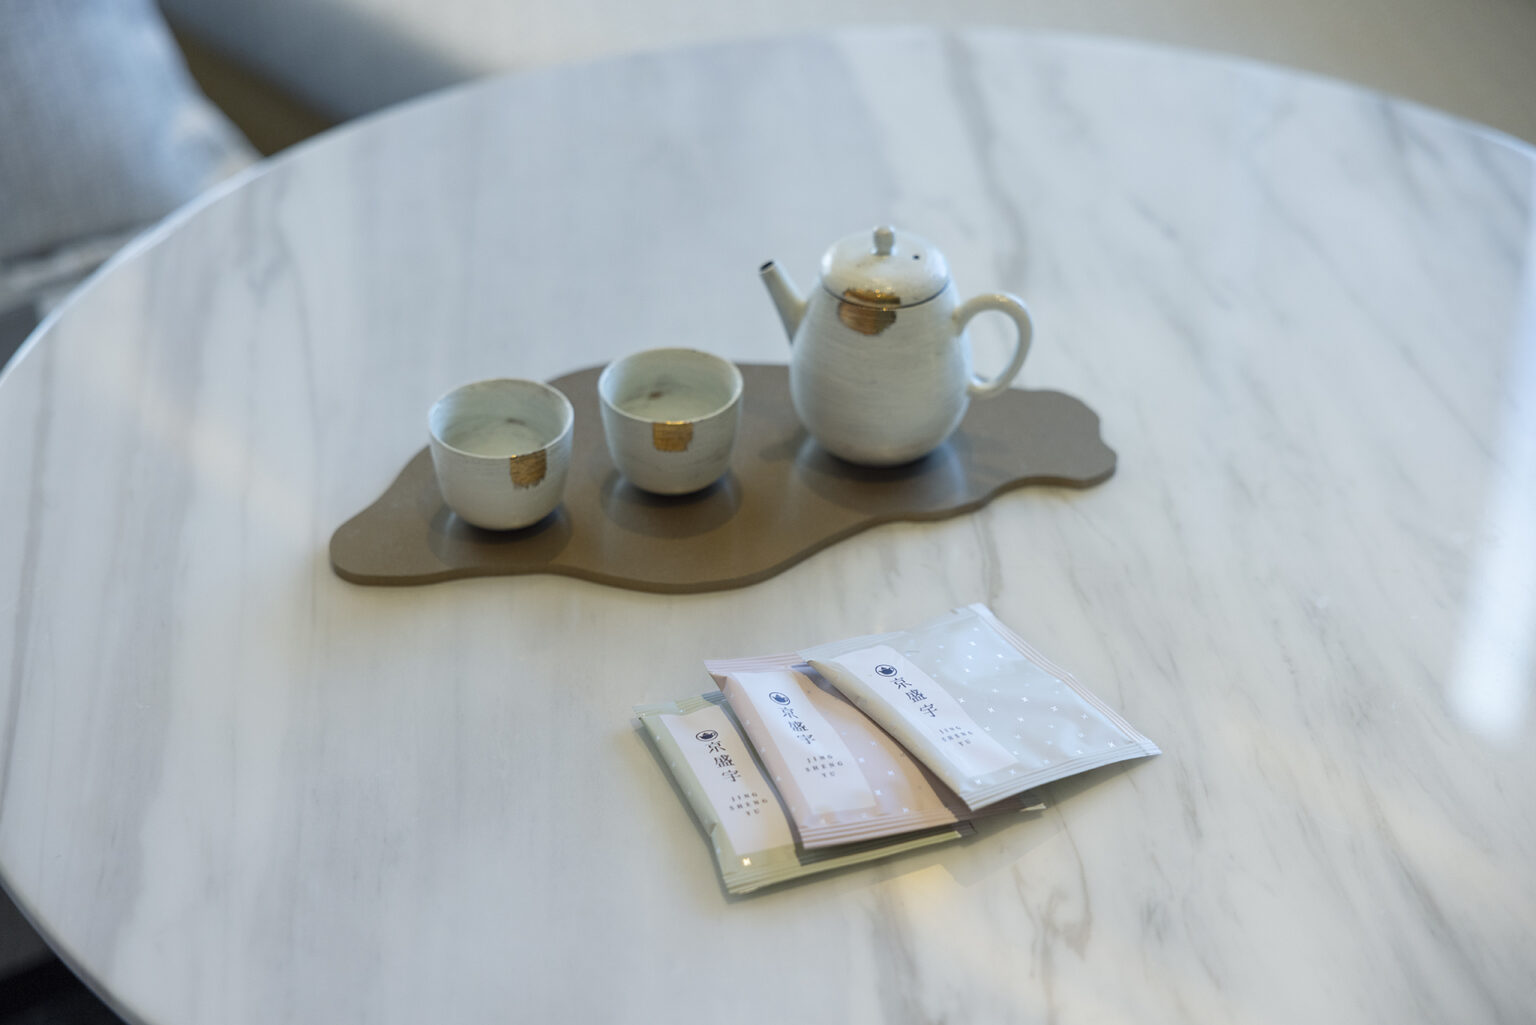 台湾茶のブランド〈京盛宇〉の香り高い烏龍茶などの台湾茶の他にもコーヒーも用意されている。